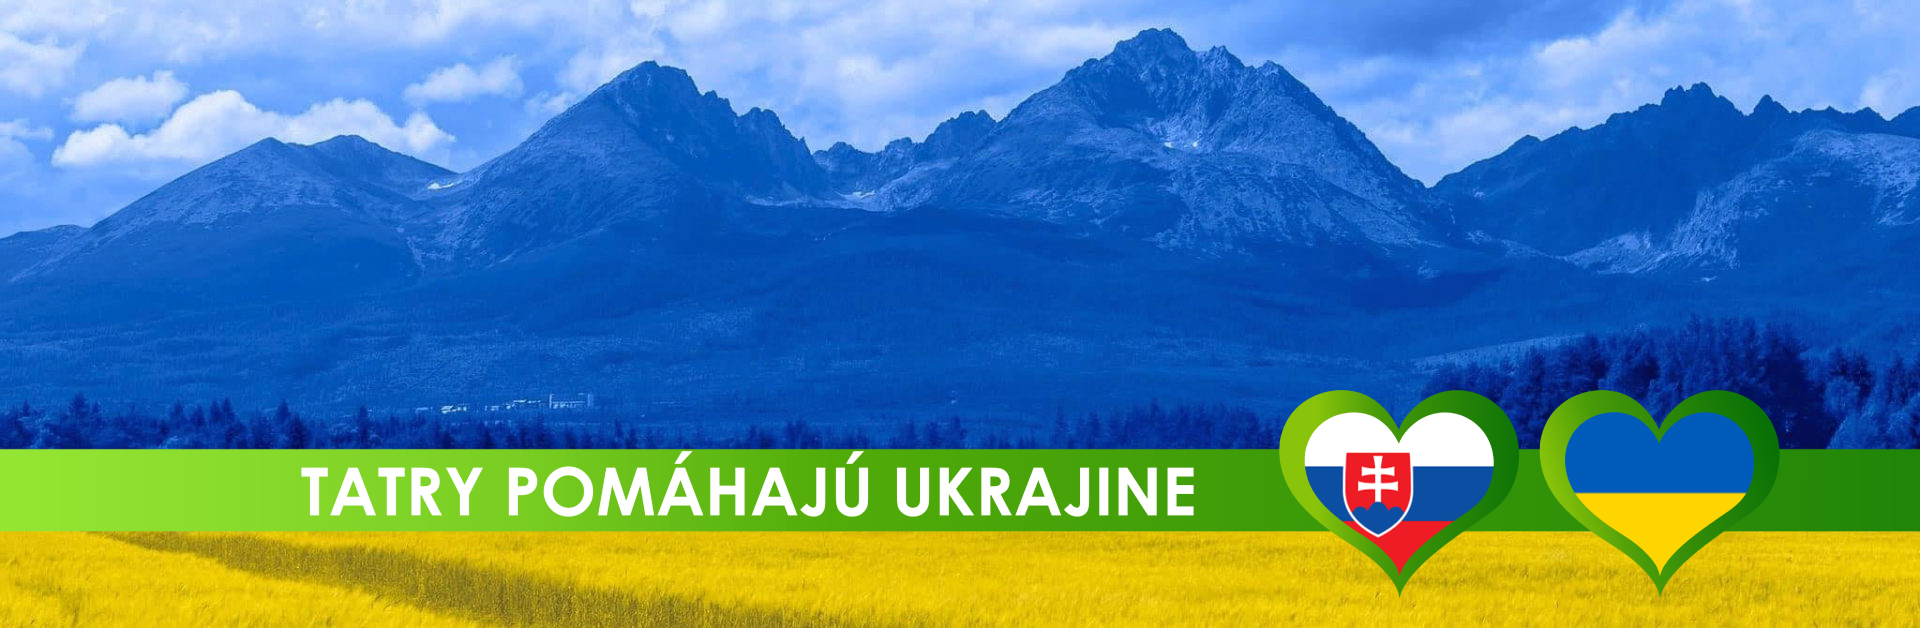 tatry pomahaju ukrajine